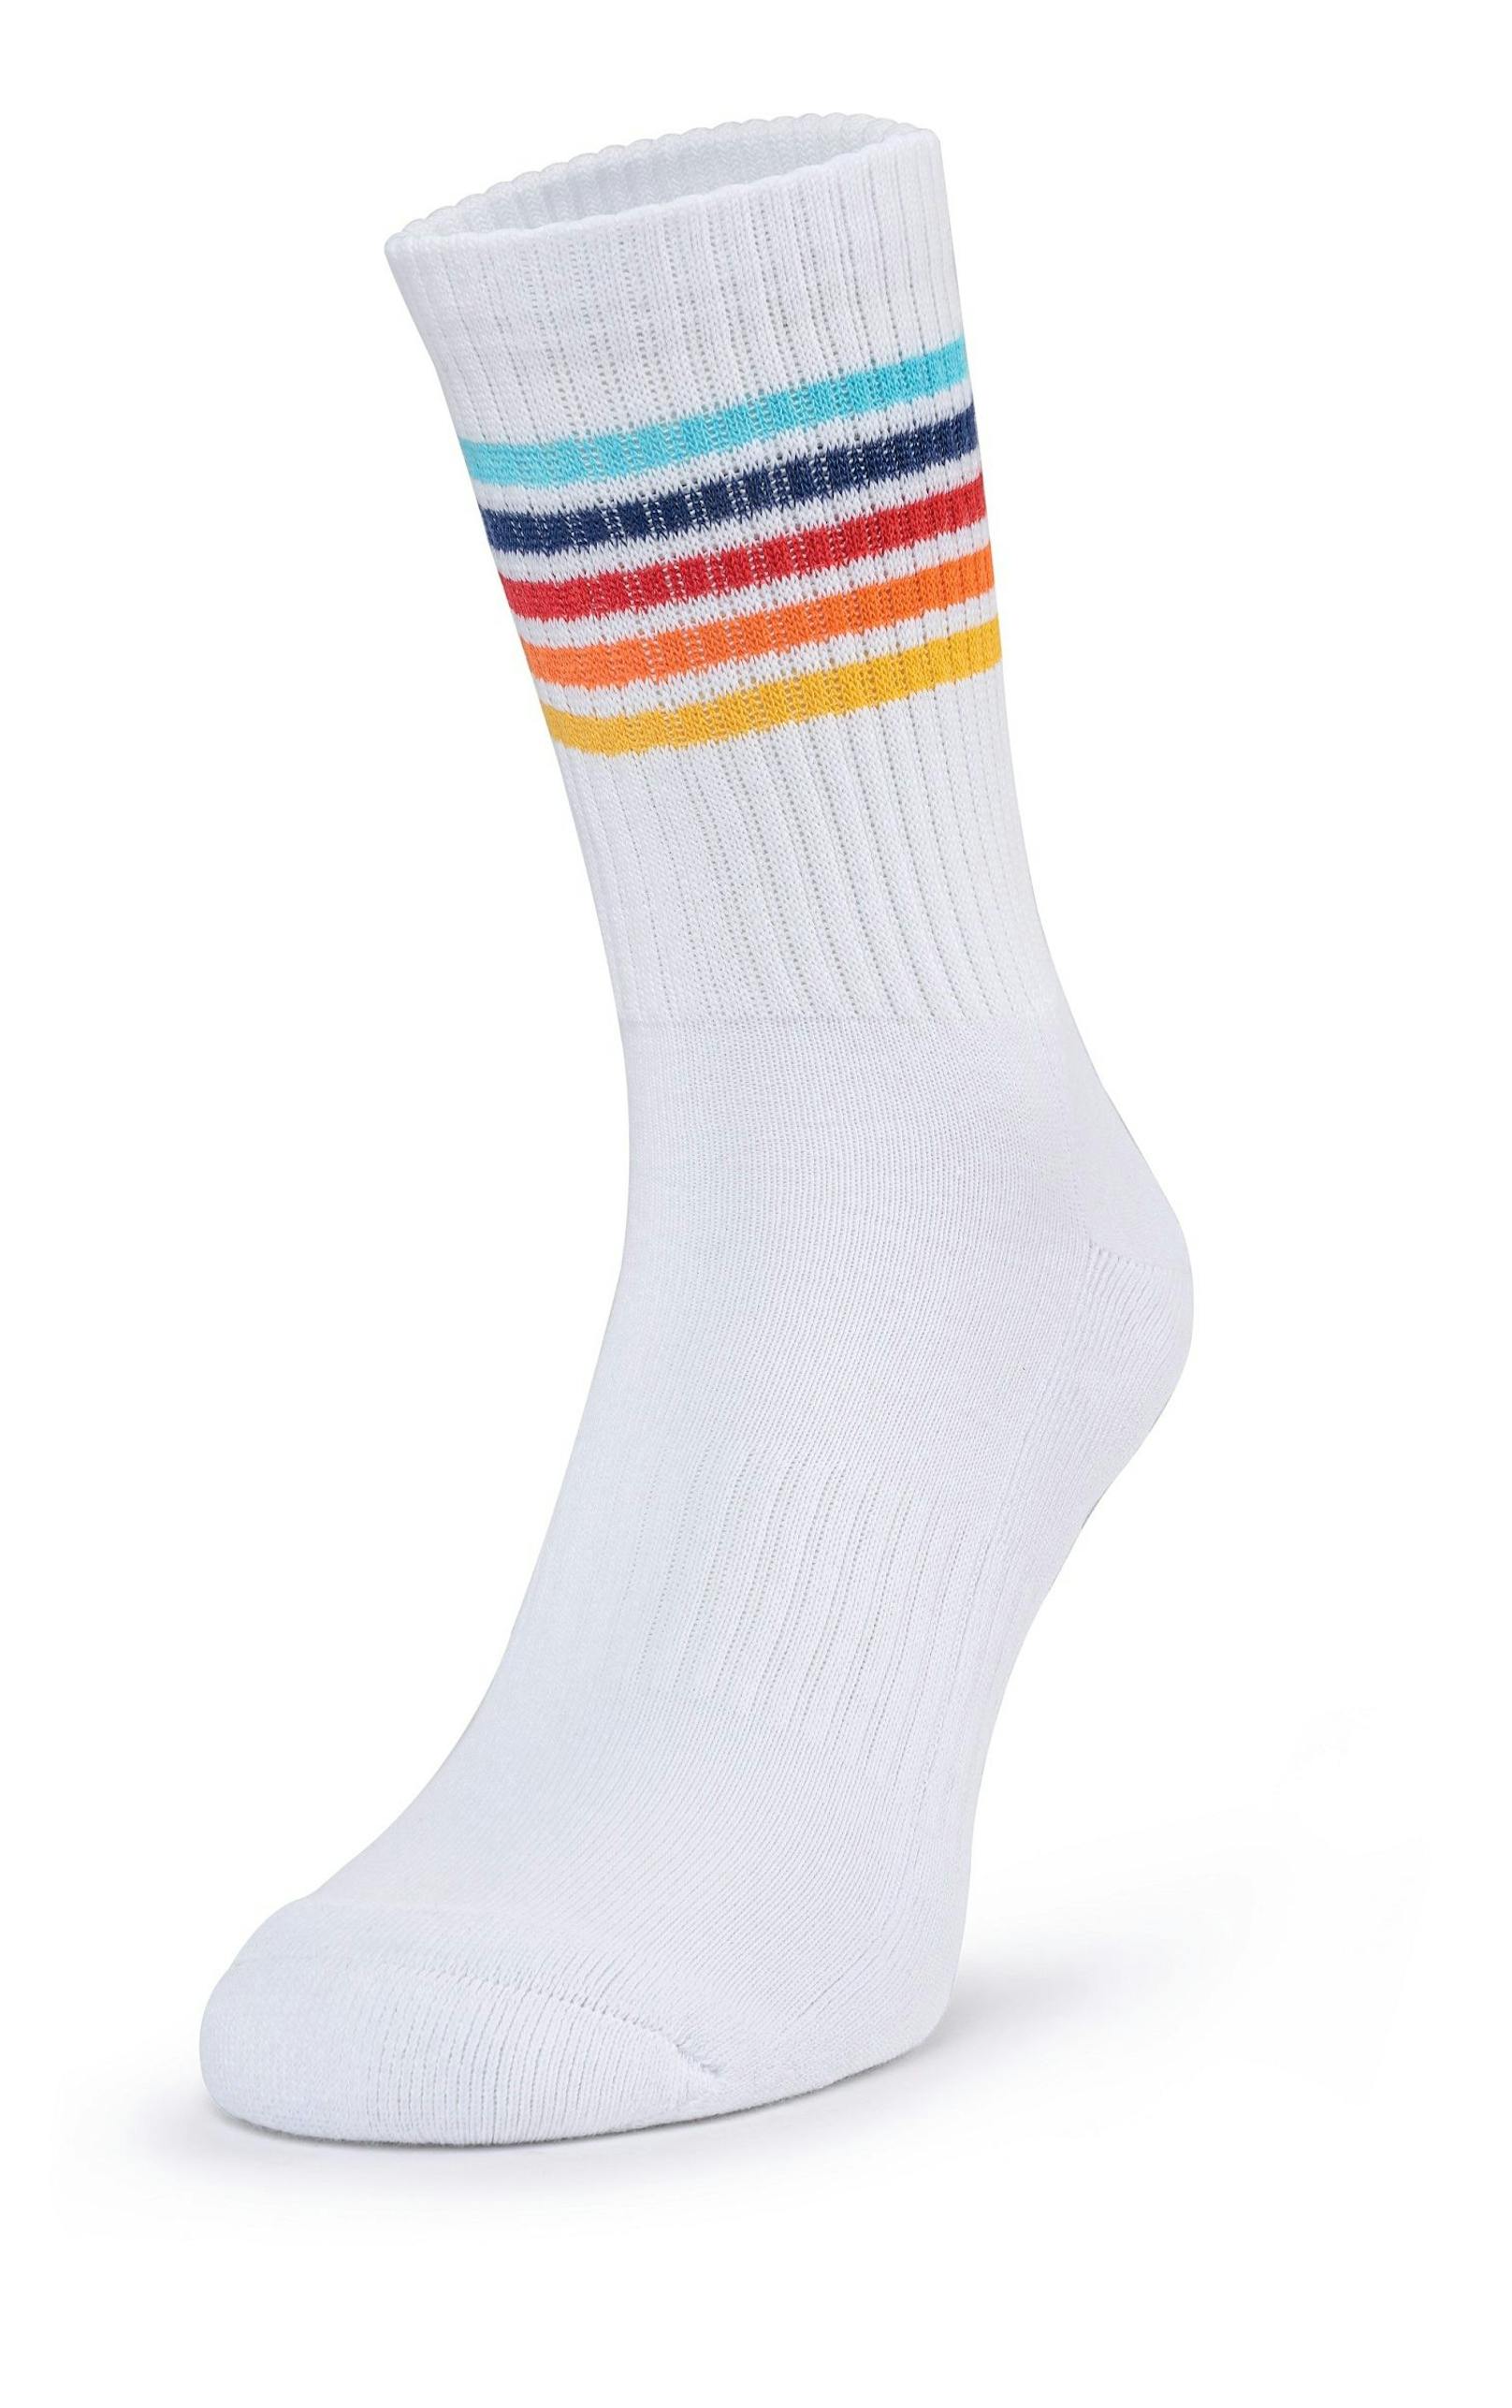 Socken: verschiedene Muster, in den Größen 35 bis 46, um 1,19 Euro per Paar.